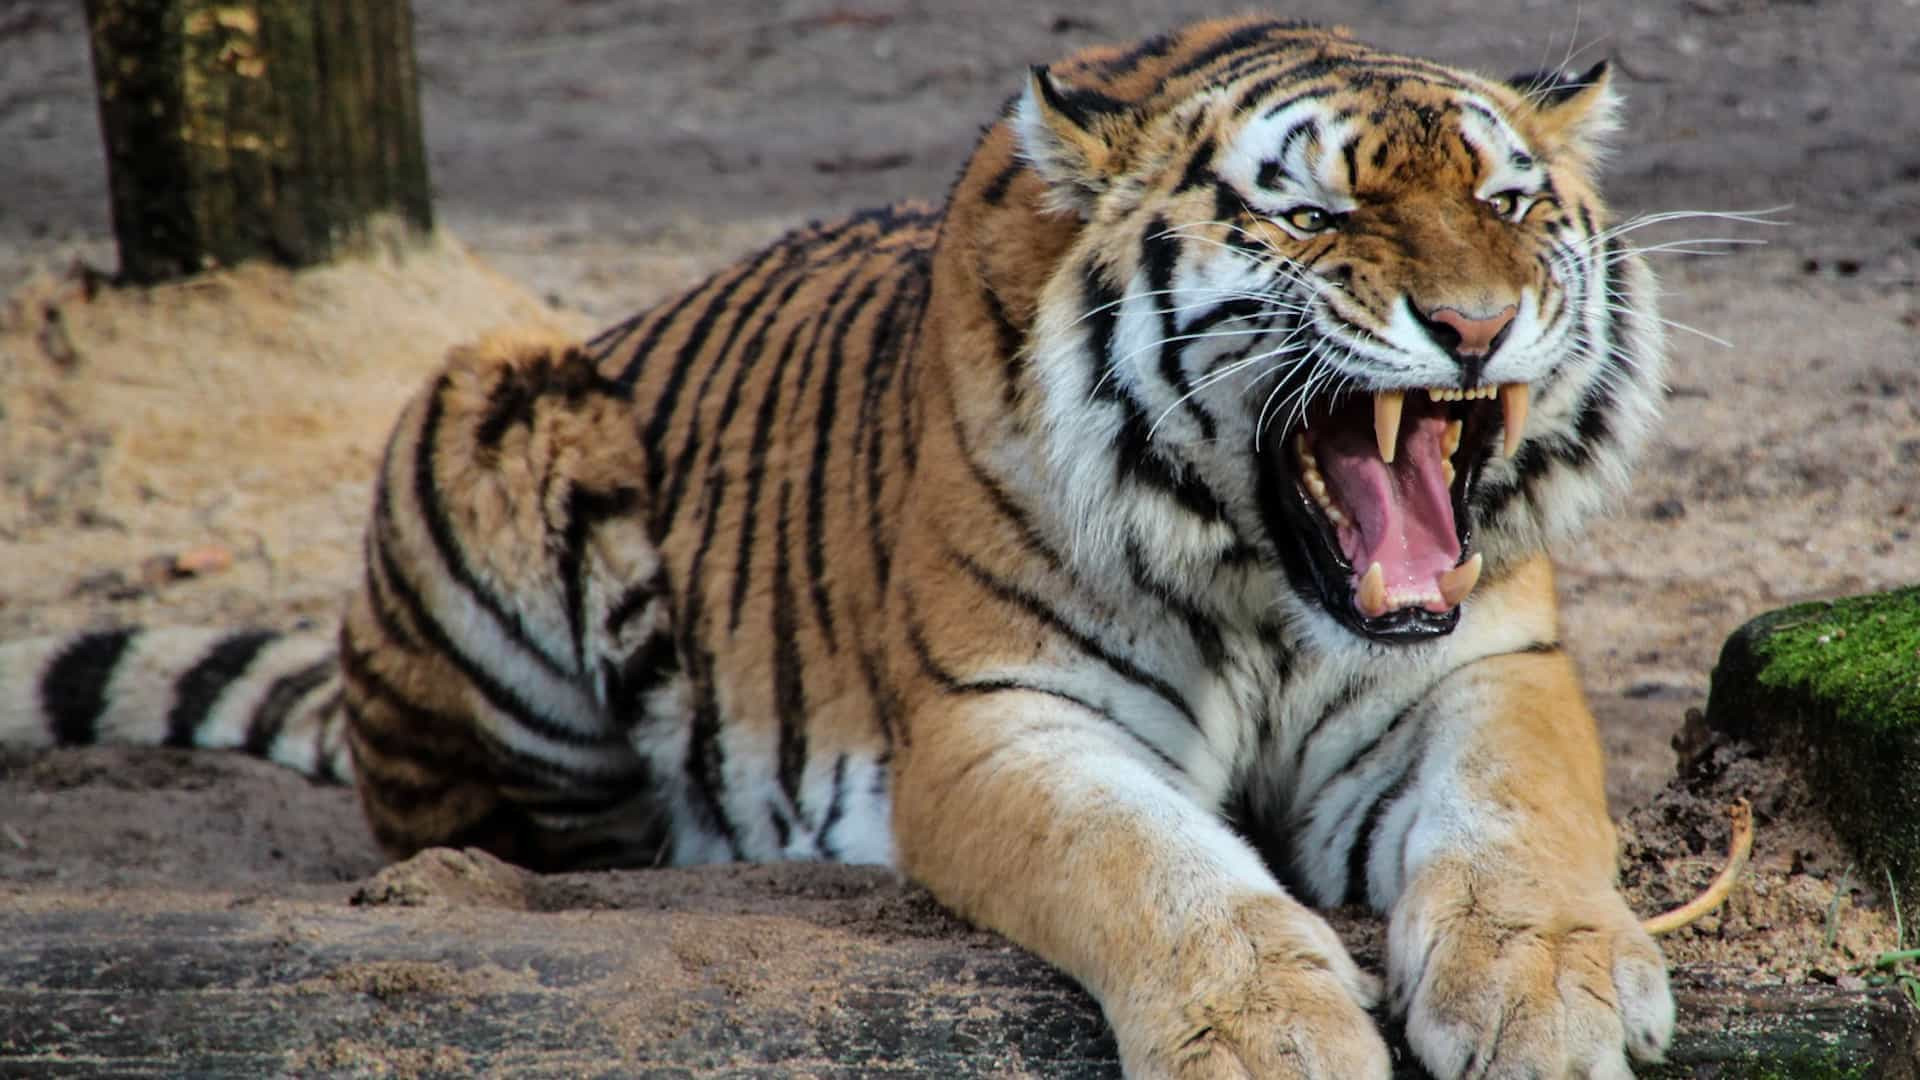 Grupo invade Zoo e agride girafa e tigre com garrafas